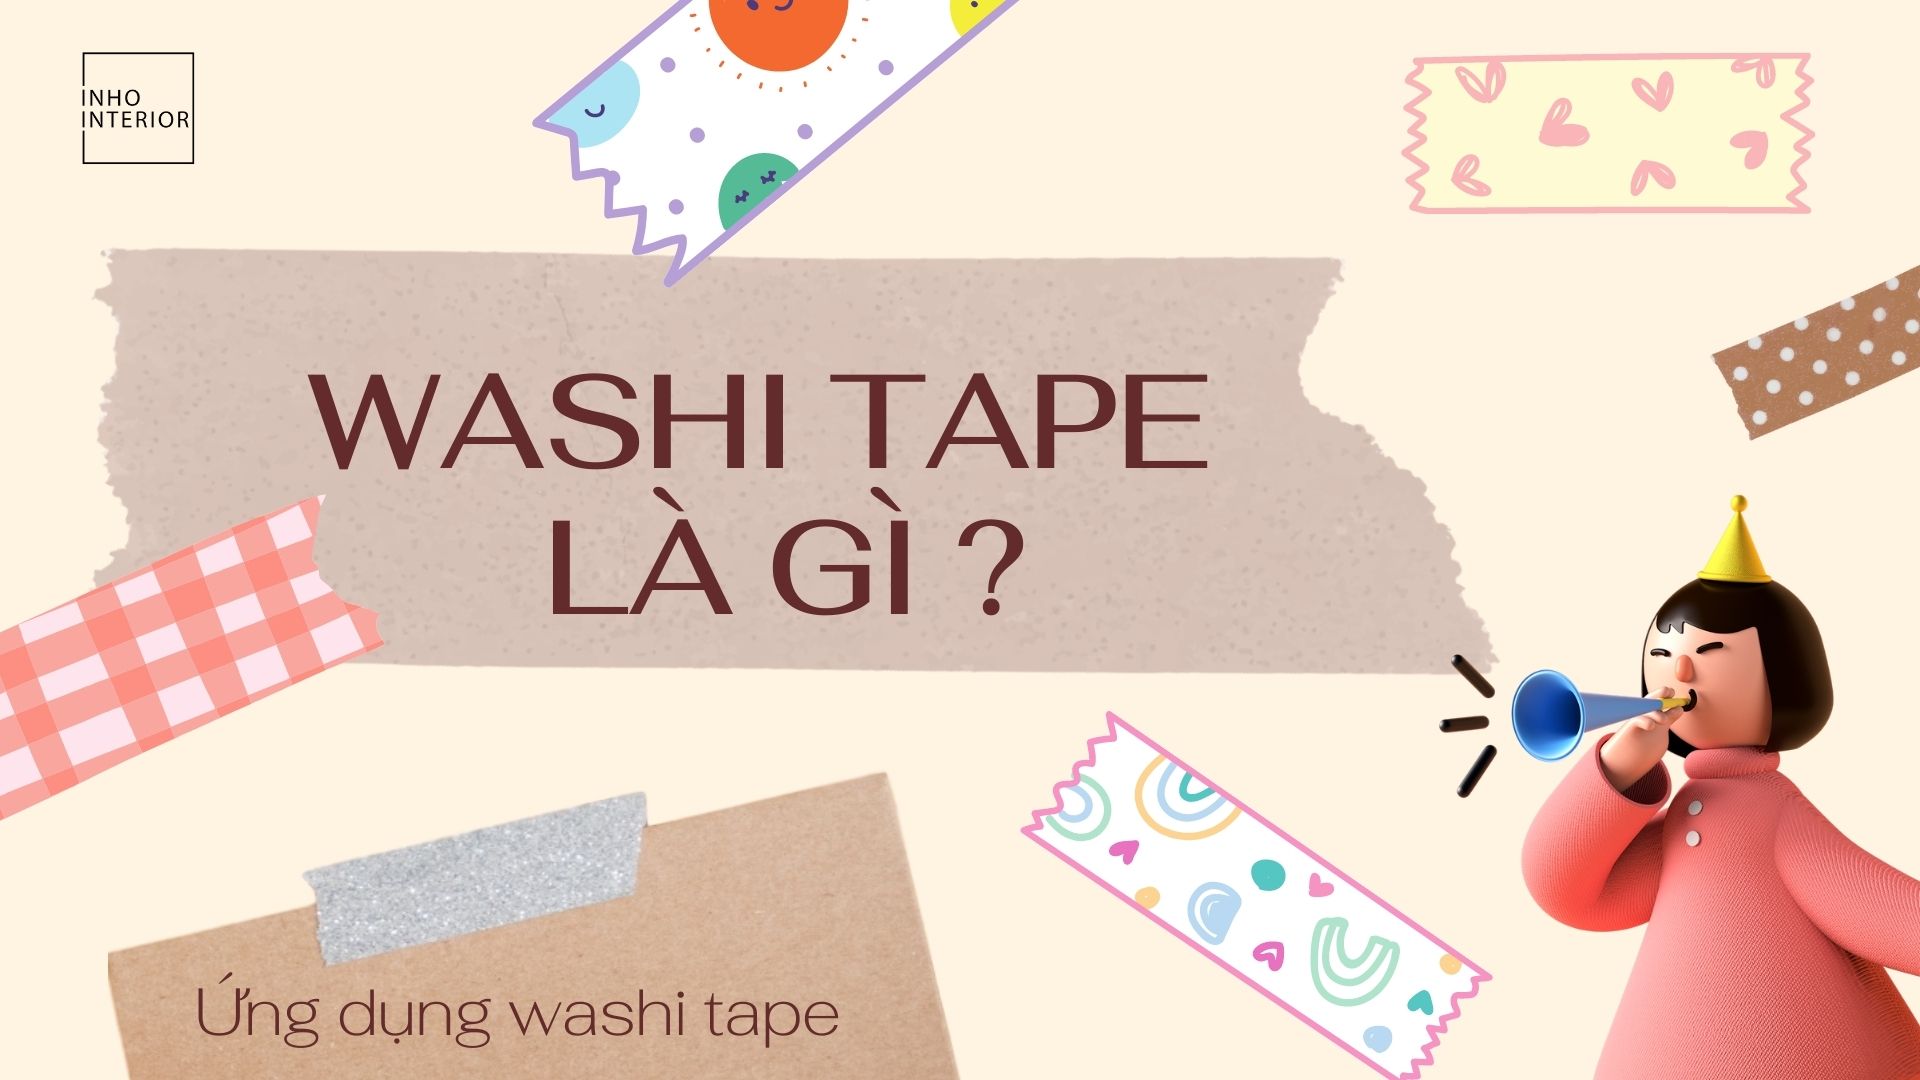 Washi Tape Là Gì ? 50 Ứng Dụng Washi Tape Trong Trang Trí